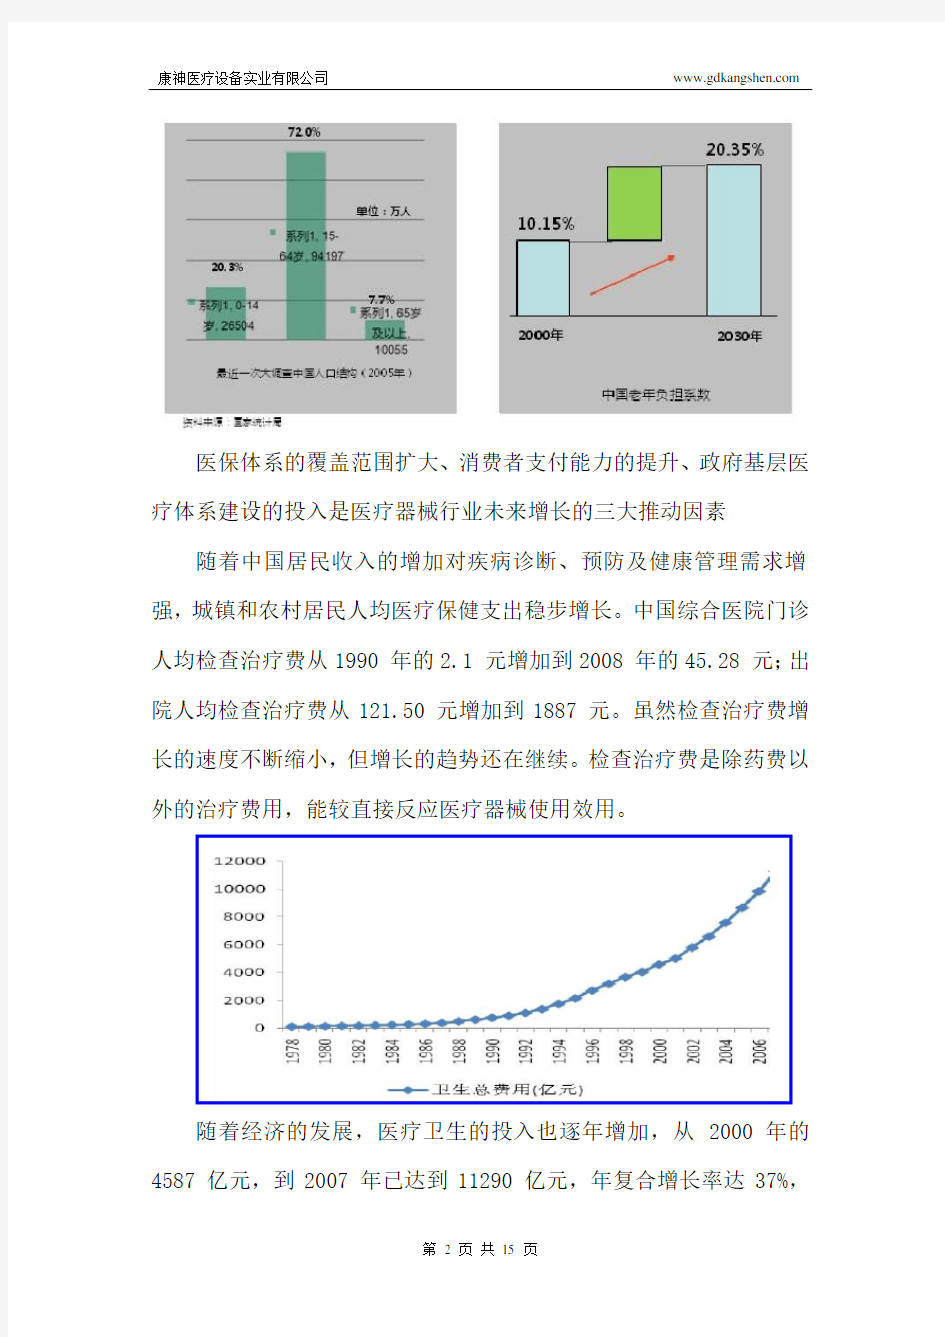 中国医疗器械发展状况及分析(附2010年最具实力的医疗器械供应商)